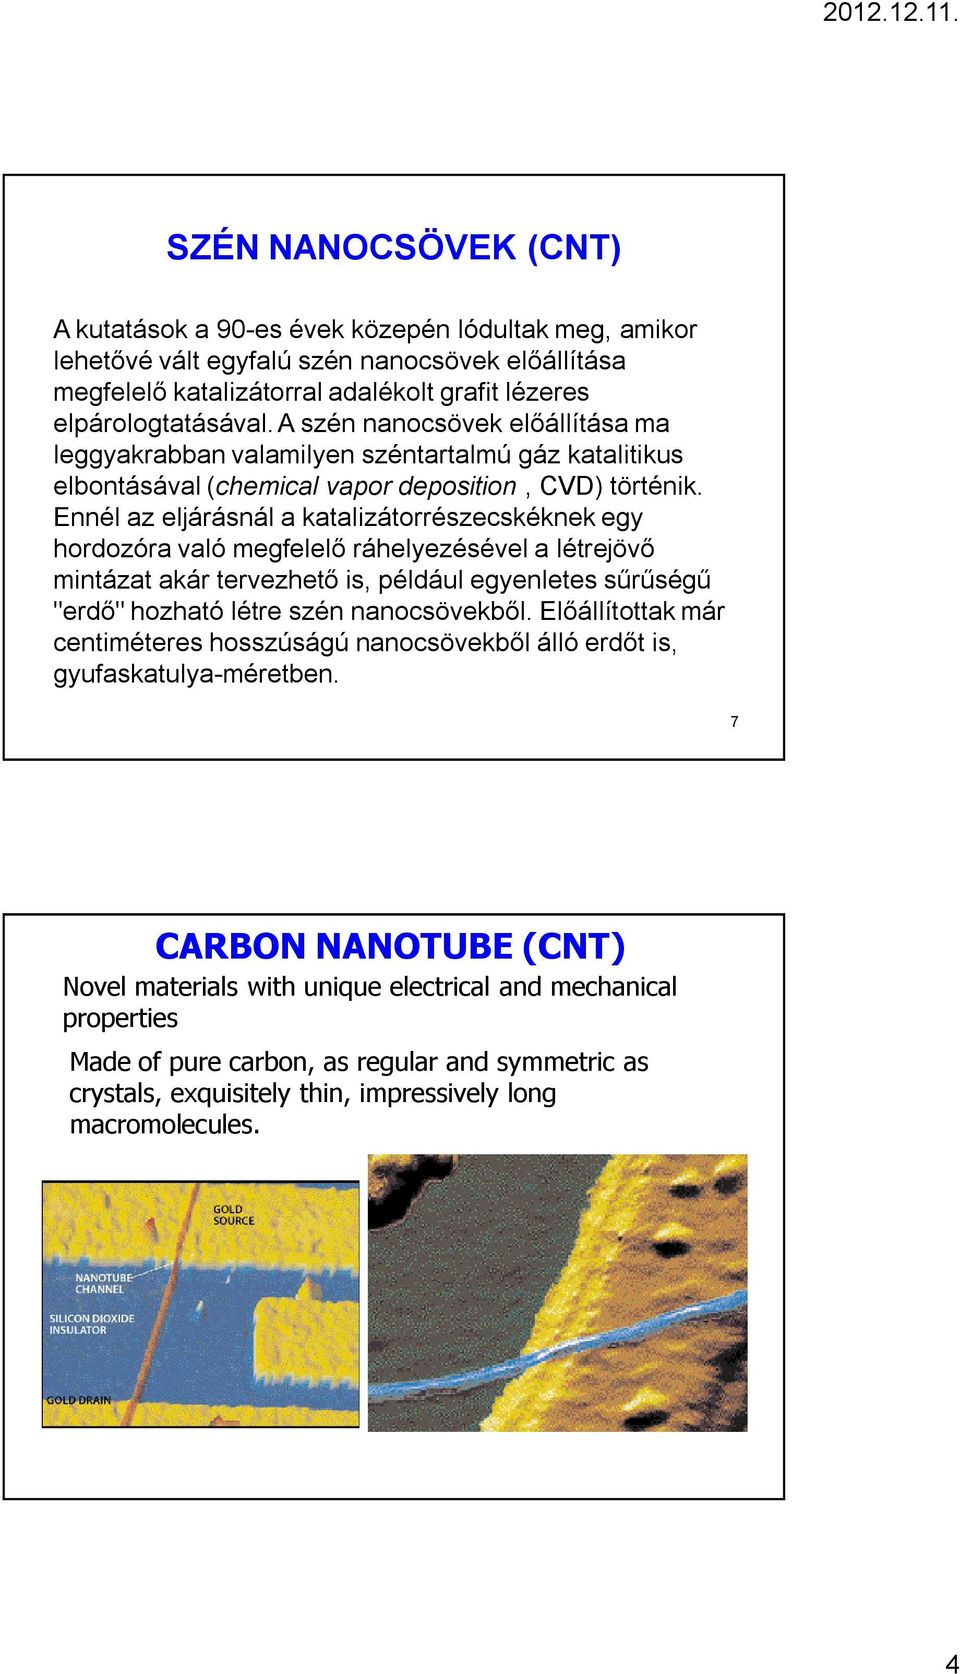 Ennél az eljárásnál a katalizátorrészecskéknek egy hordozóra való megfelelő ráhelyezésével a létrejövő mintázat akár tervezhető is, például egyenletes sűrűségű "erdő" hozható létre szén nanocsövekből.